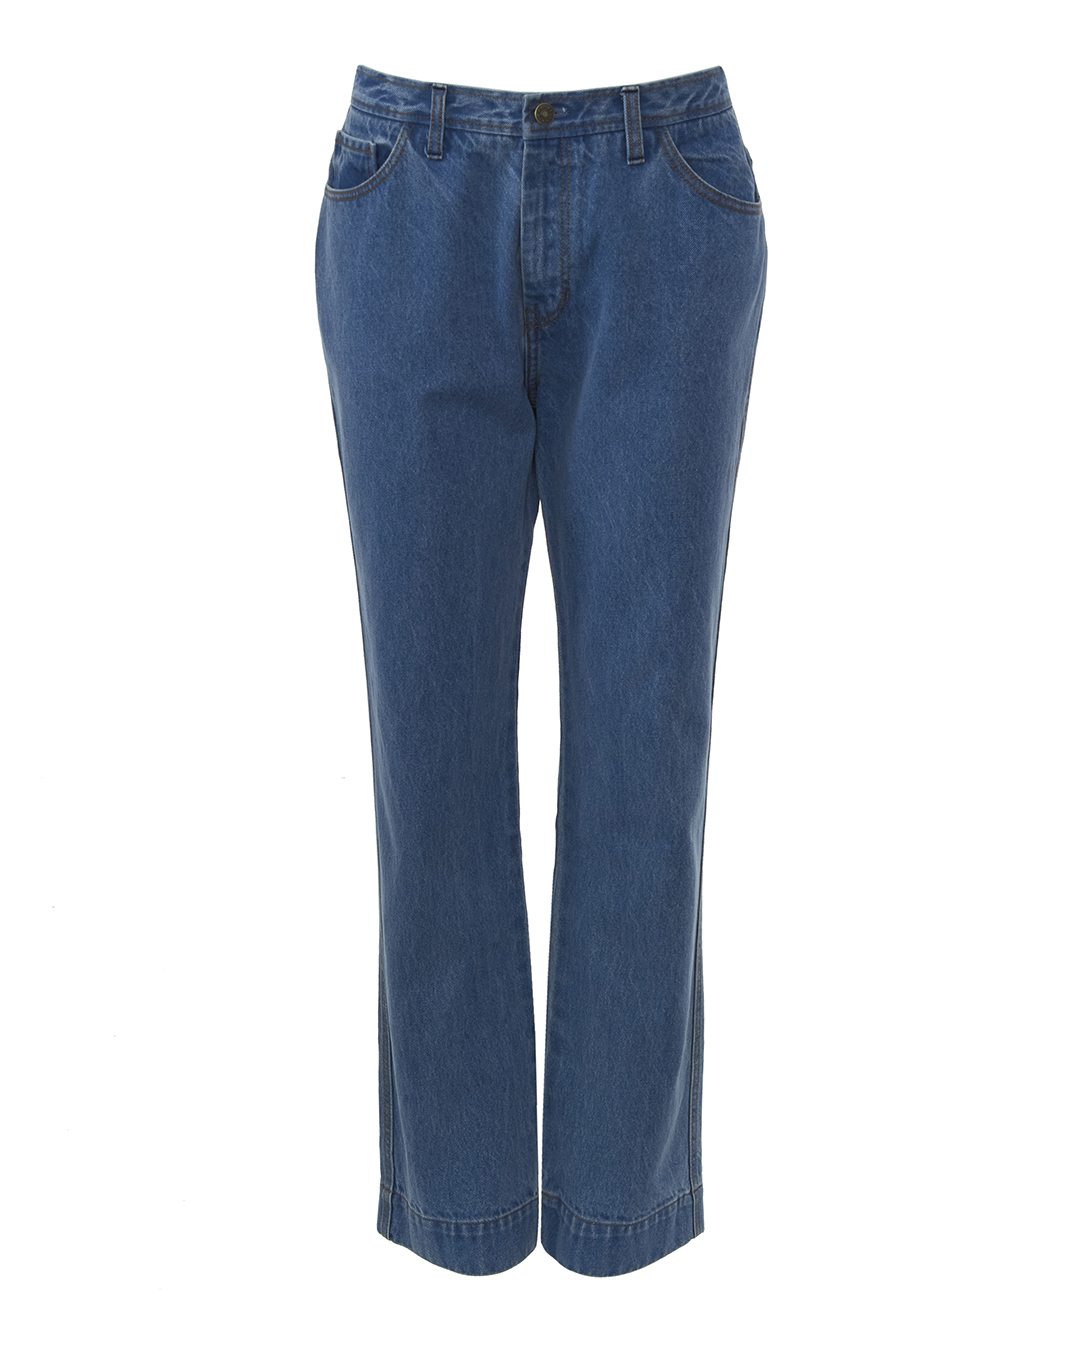 джинсы Rejina Pyo E162-DB голубой 40, размер 40 - фото 1